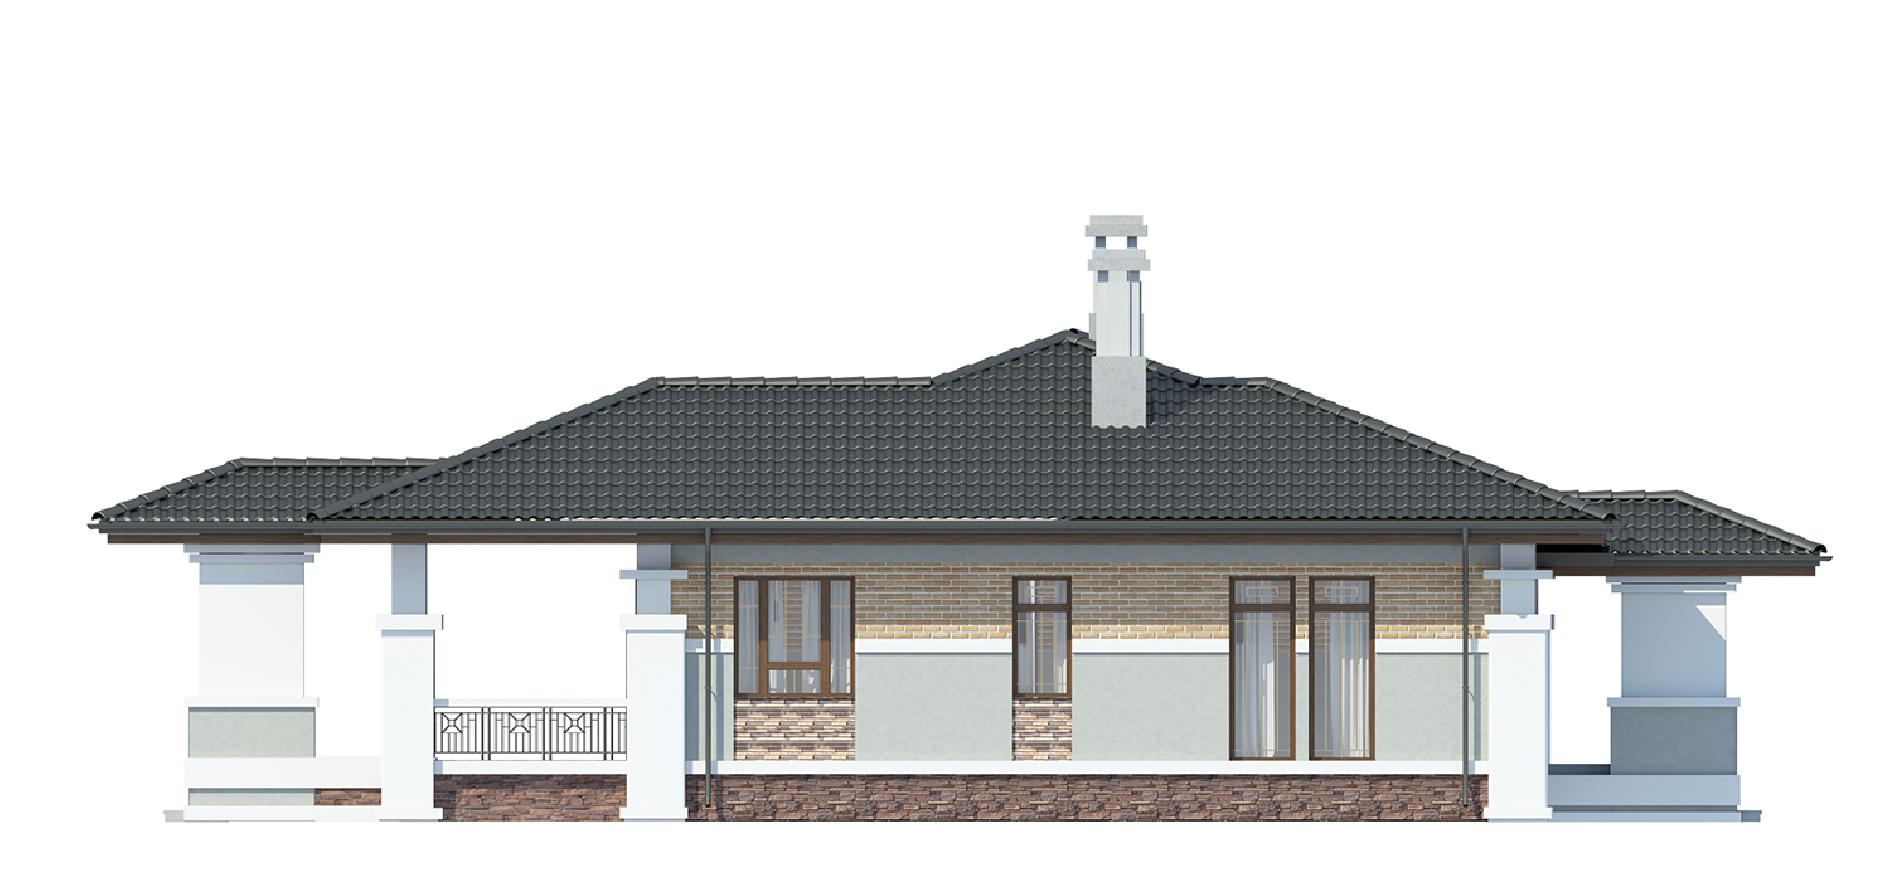 Фасады проекта дома №cp-90-12 cp-90-12_4.jpg